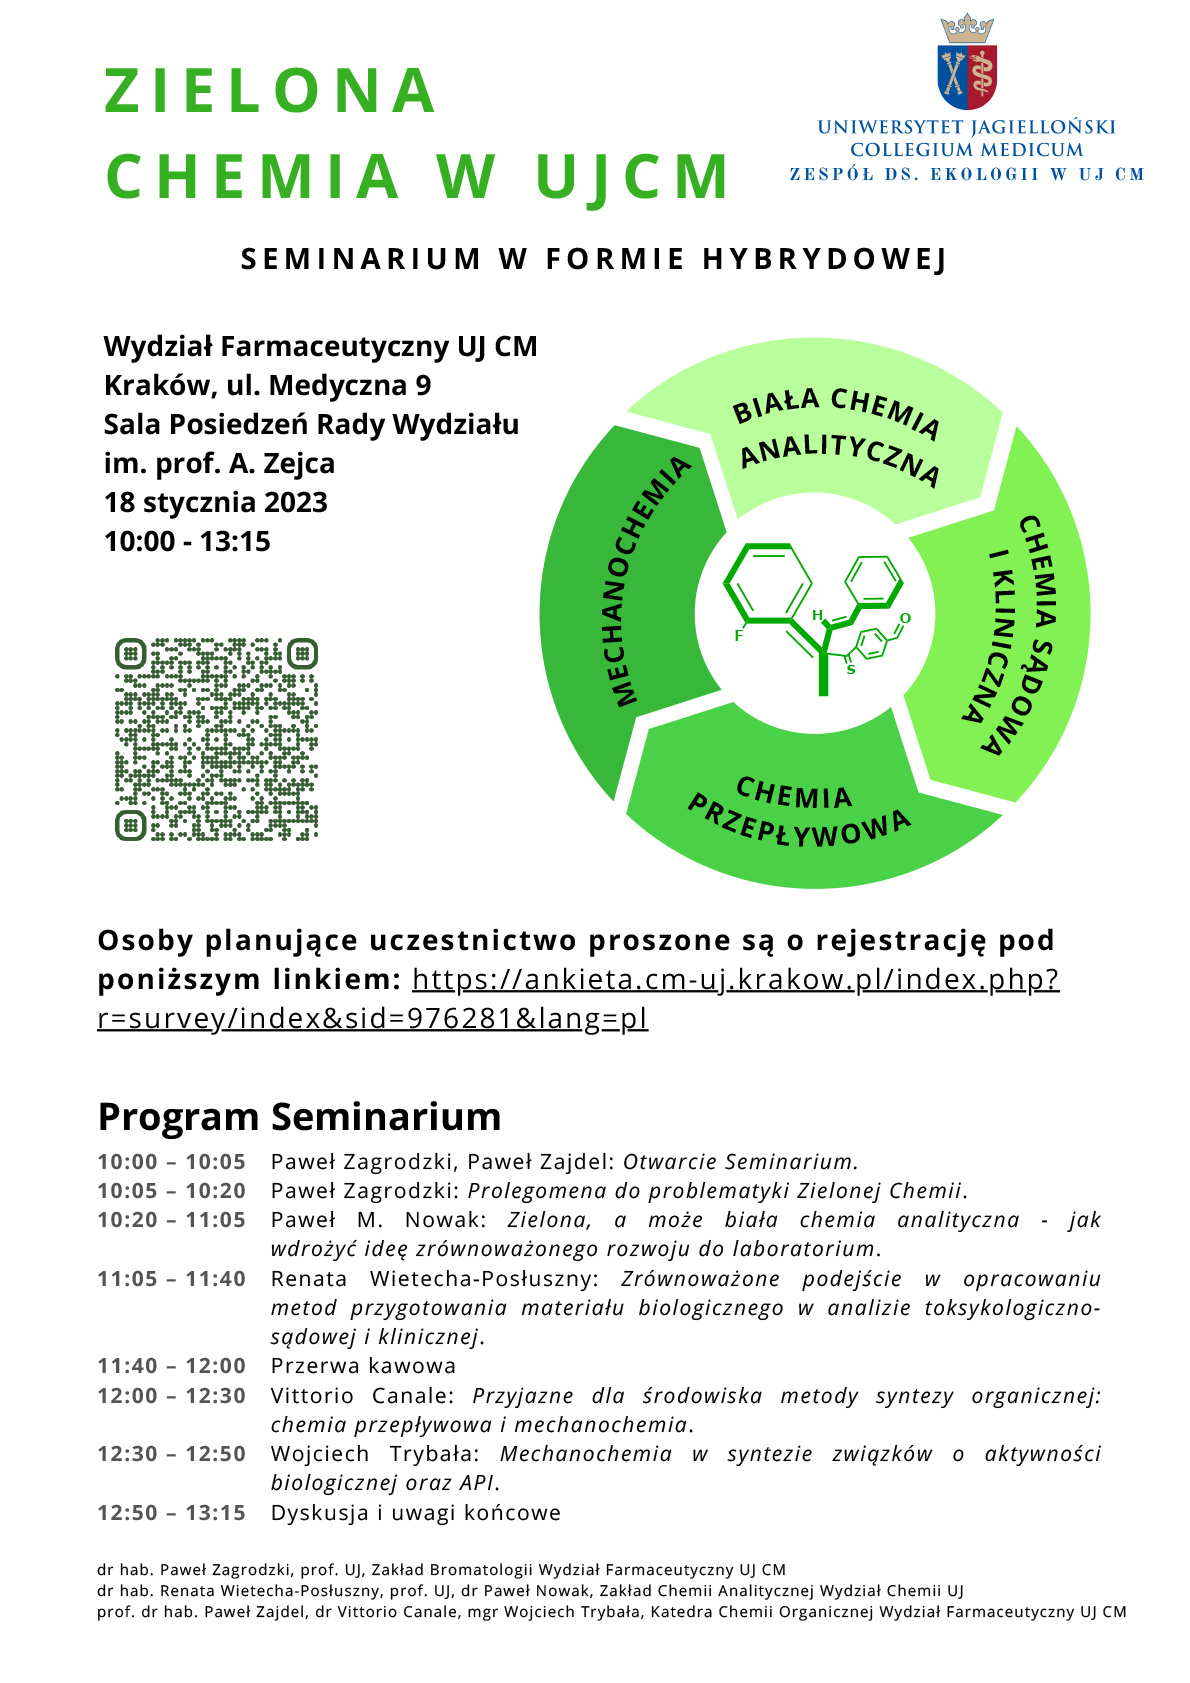 Plakat informacyjny Seminarium Zielona Chemia w UJCM